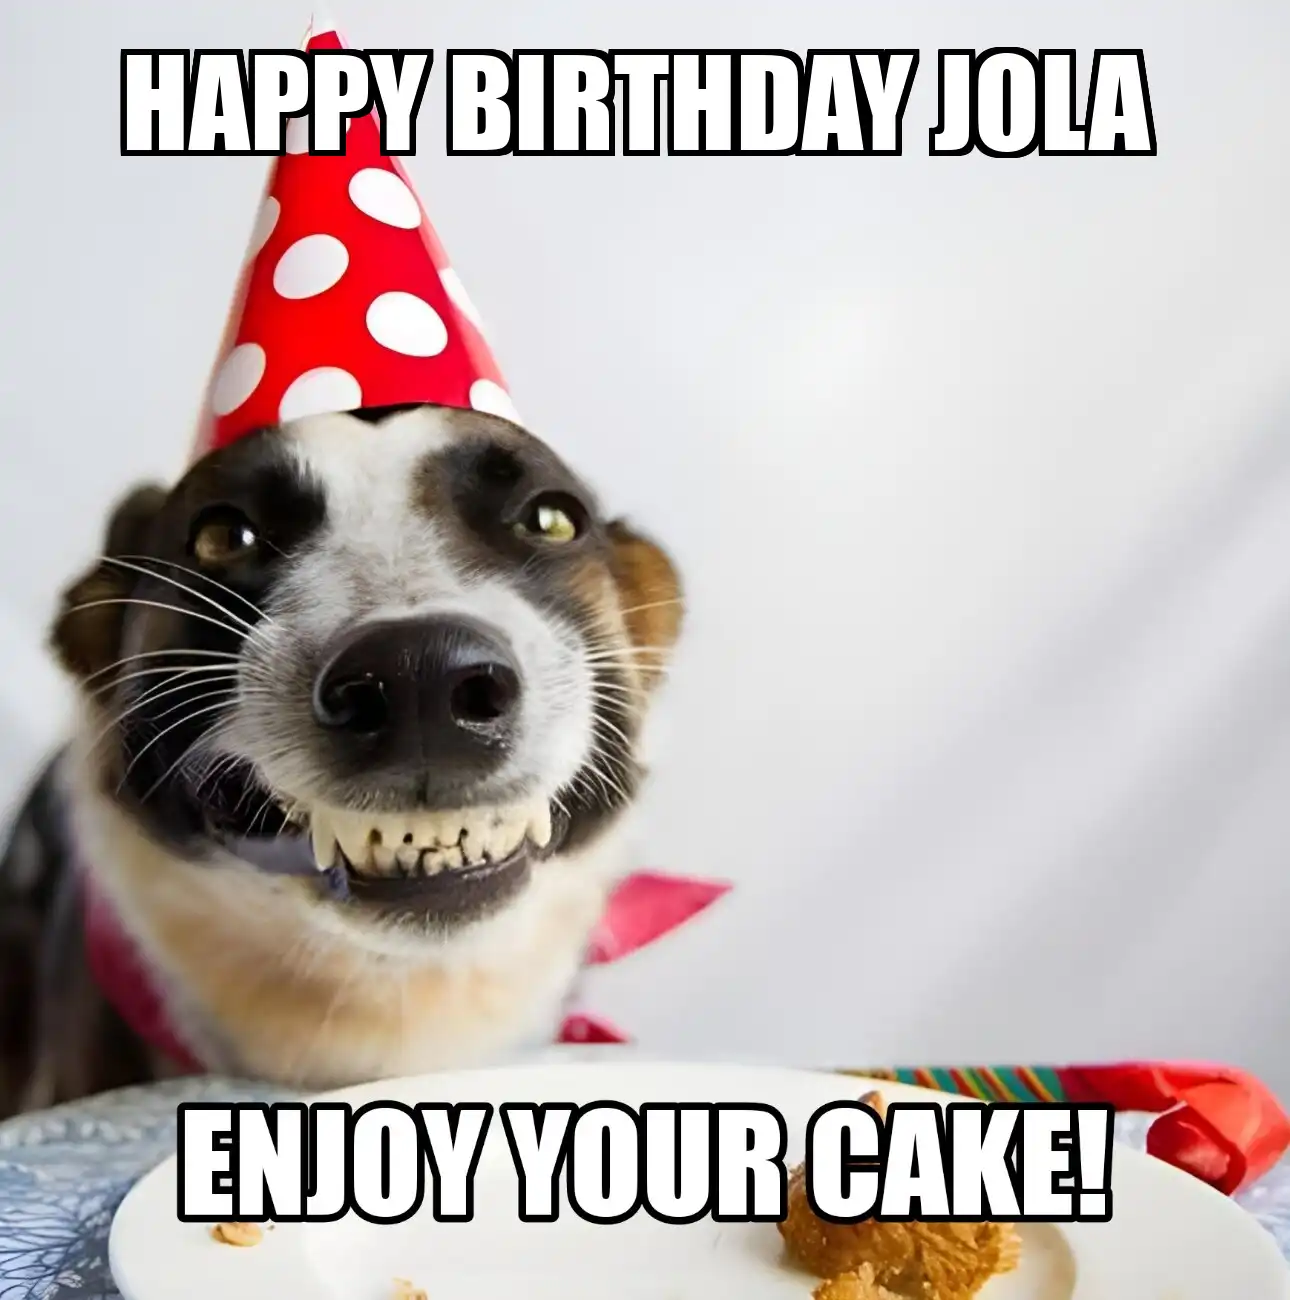 Happy Birthday Jola Enjoy Your Cake Dog Meme